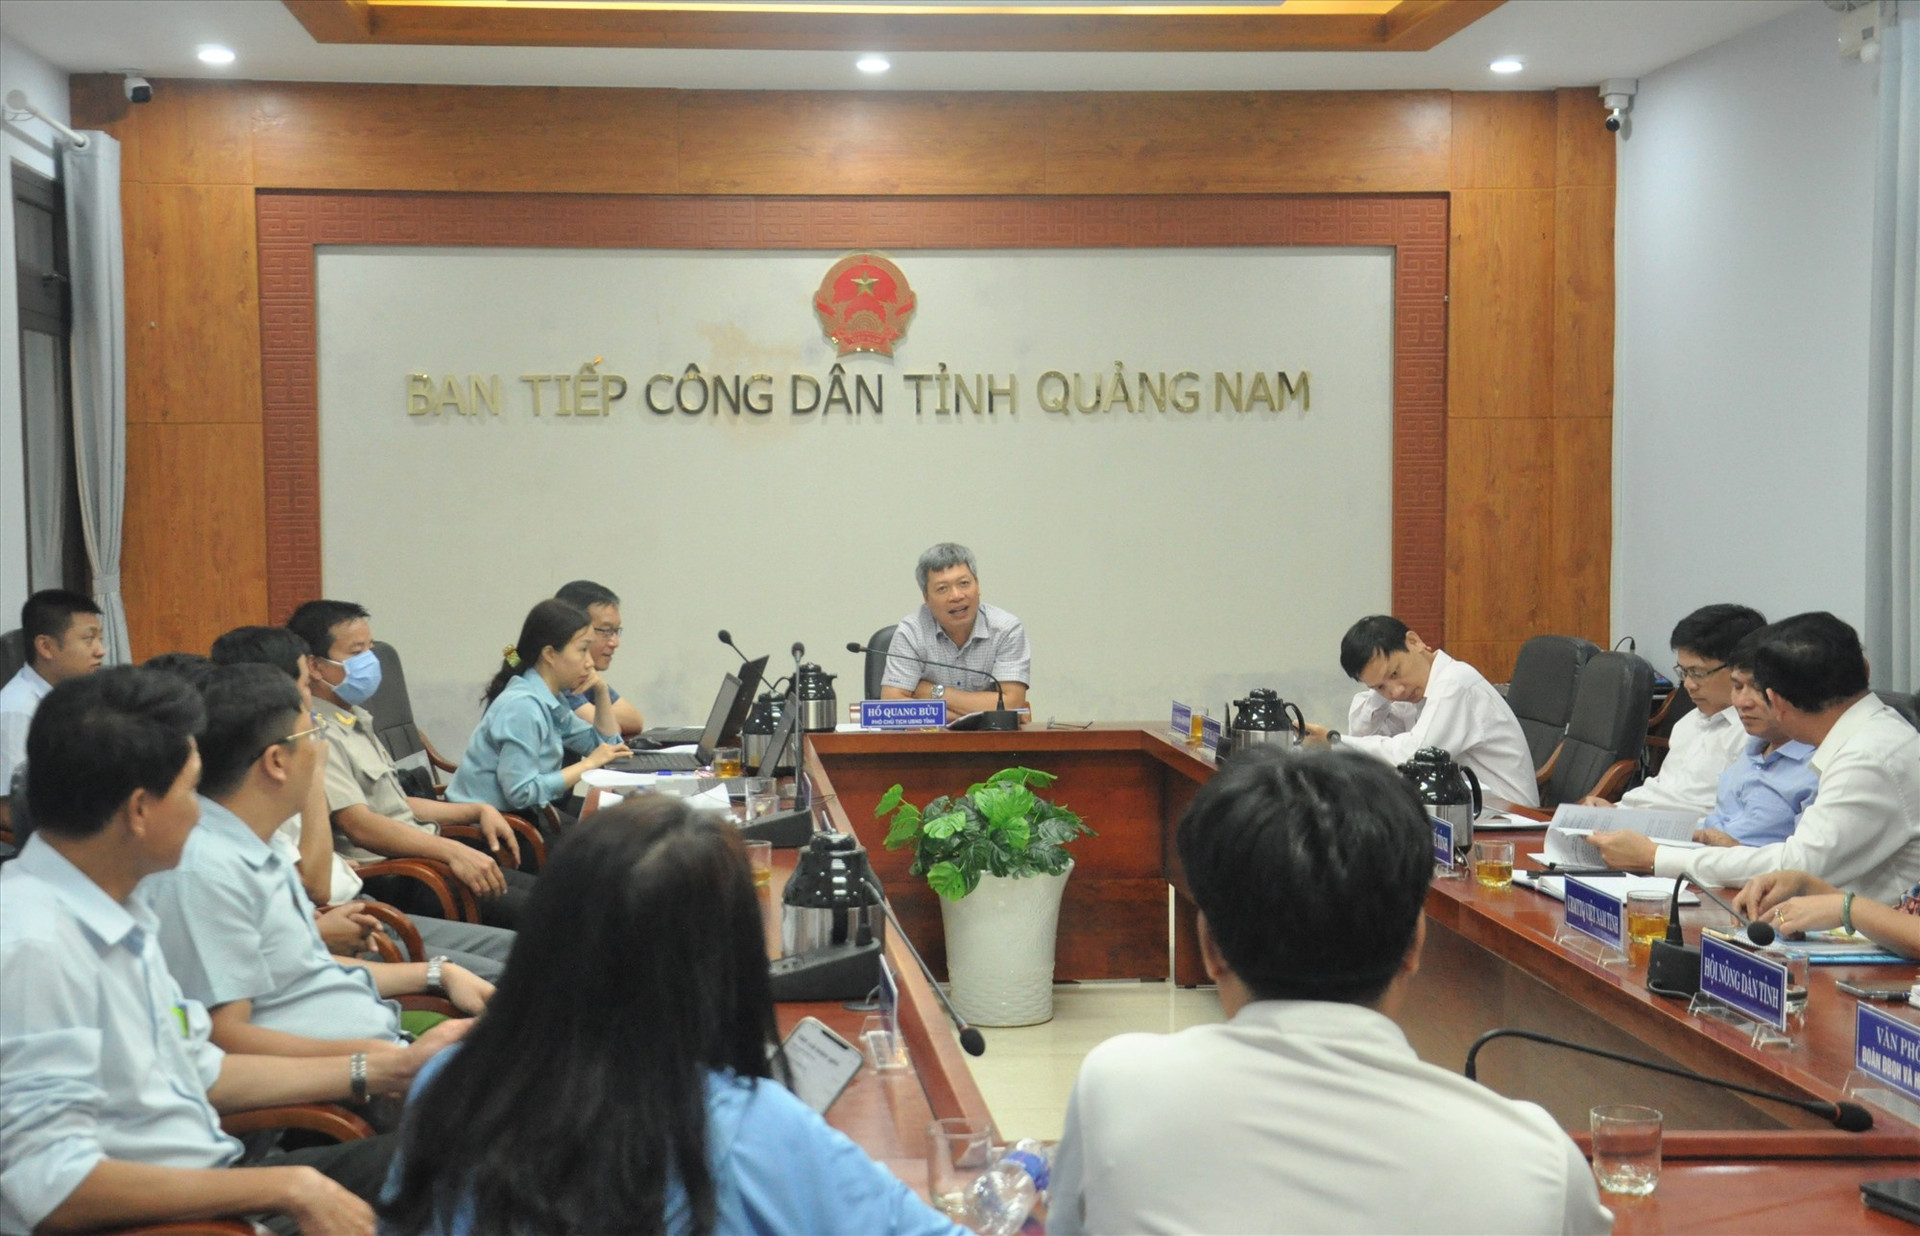 Phó Chủ tịch UBND tỉnh Hồ Quang Bửu trao đổi với người dân. Ảnh: X.P